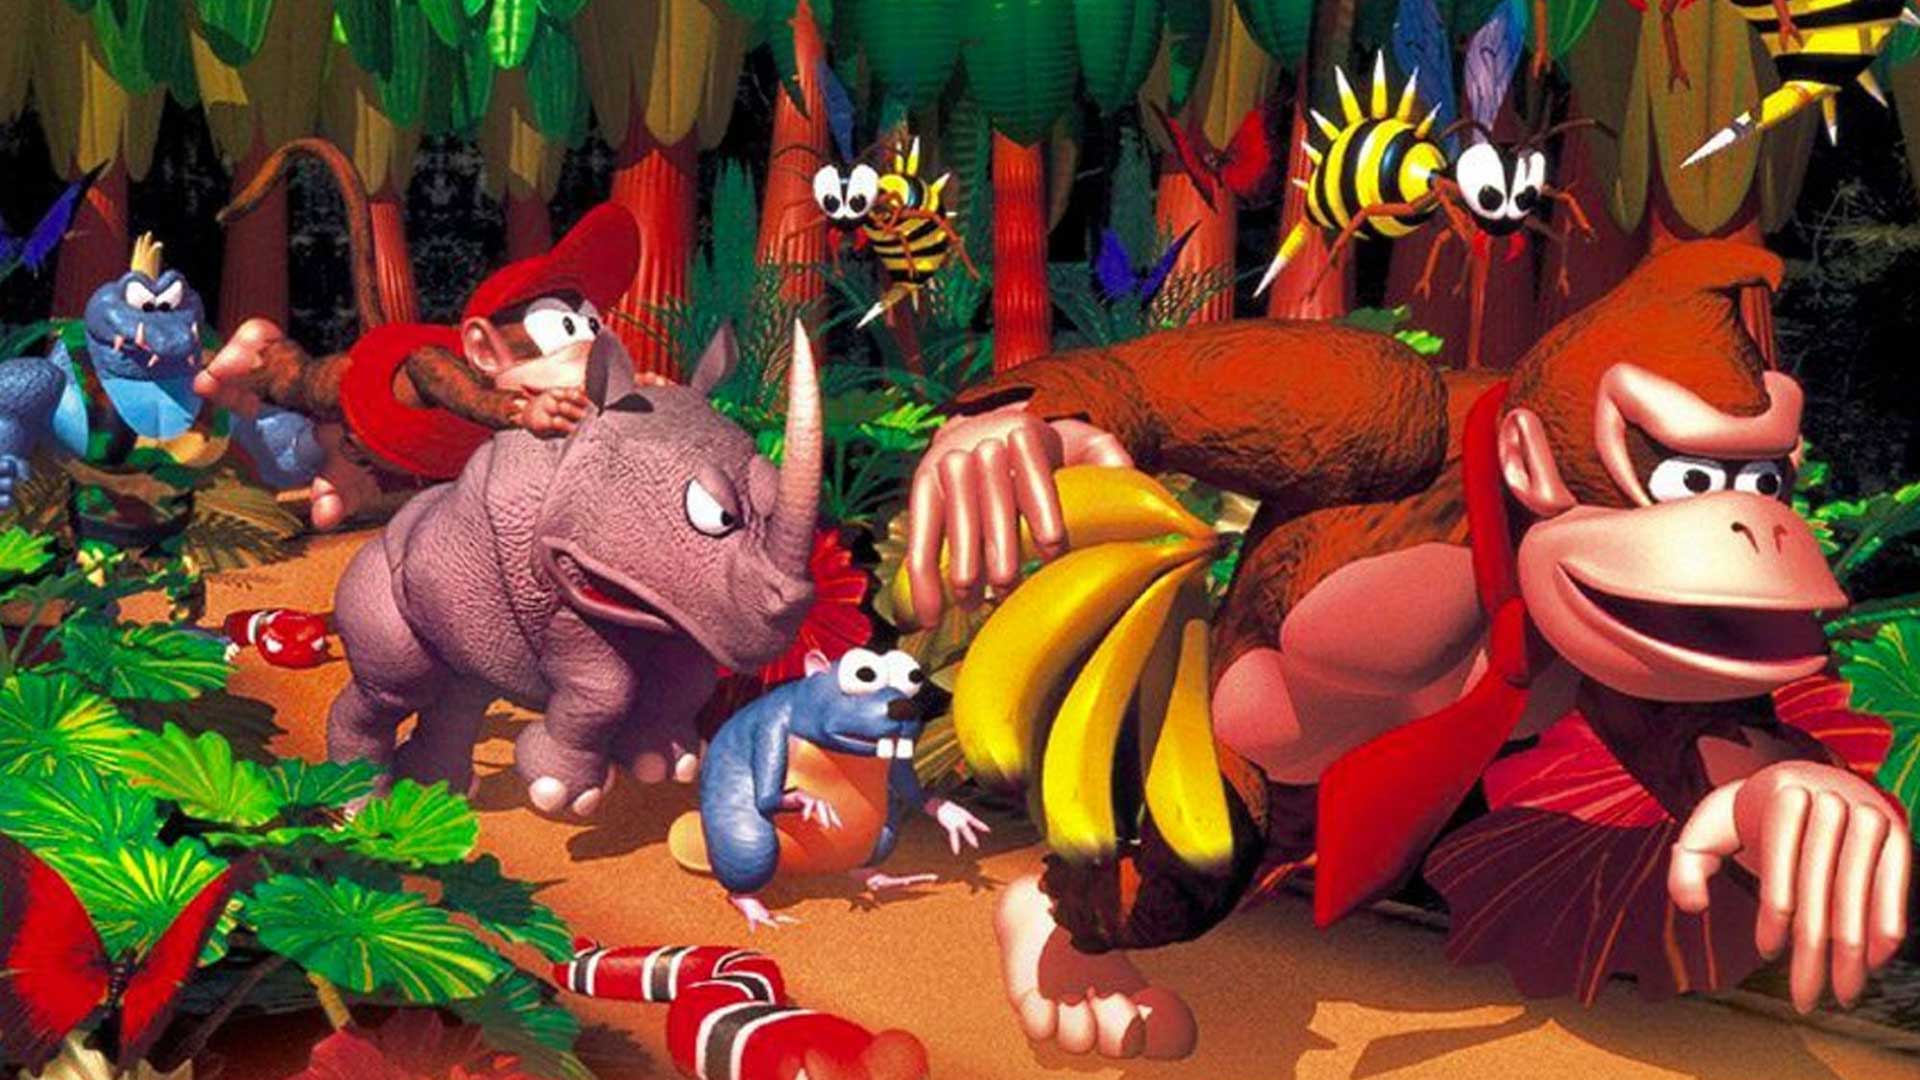 احتمال ساخت Donkey Kong جدید توسط سازندگان سوپر ماریو اودیسی